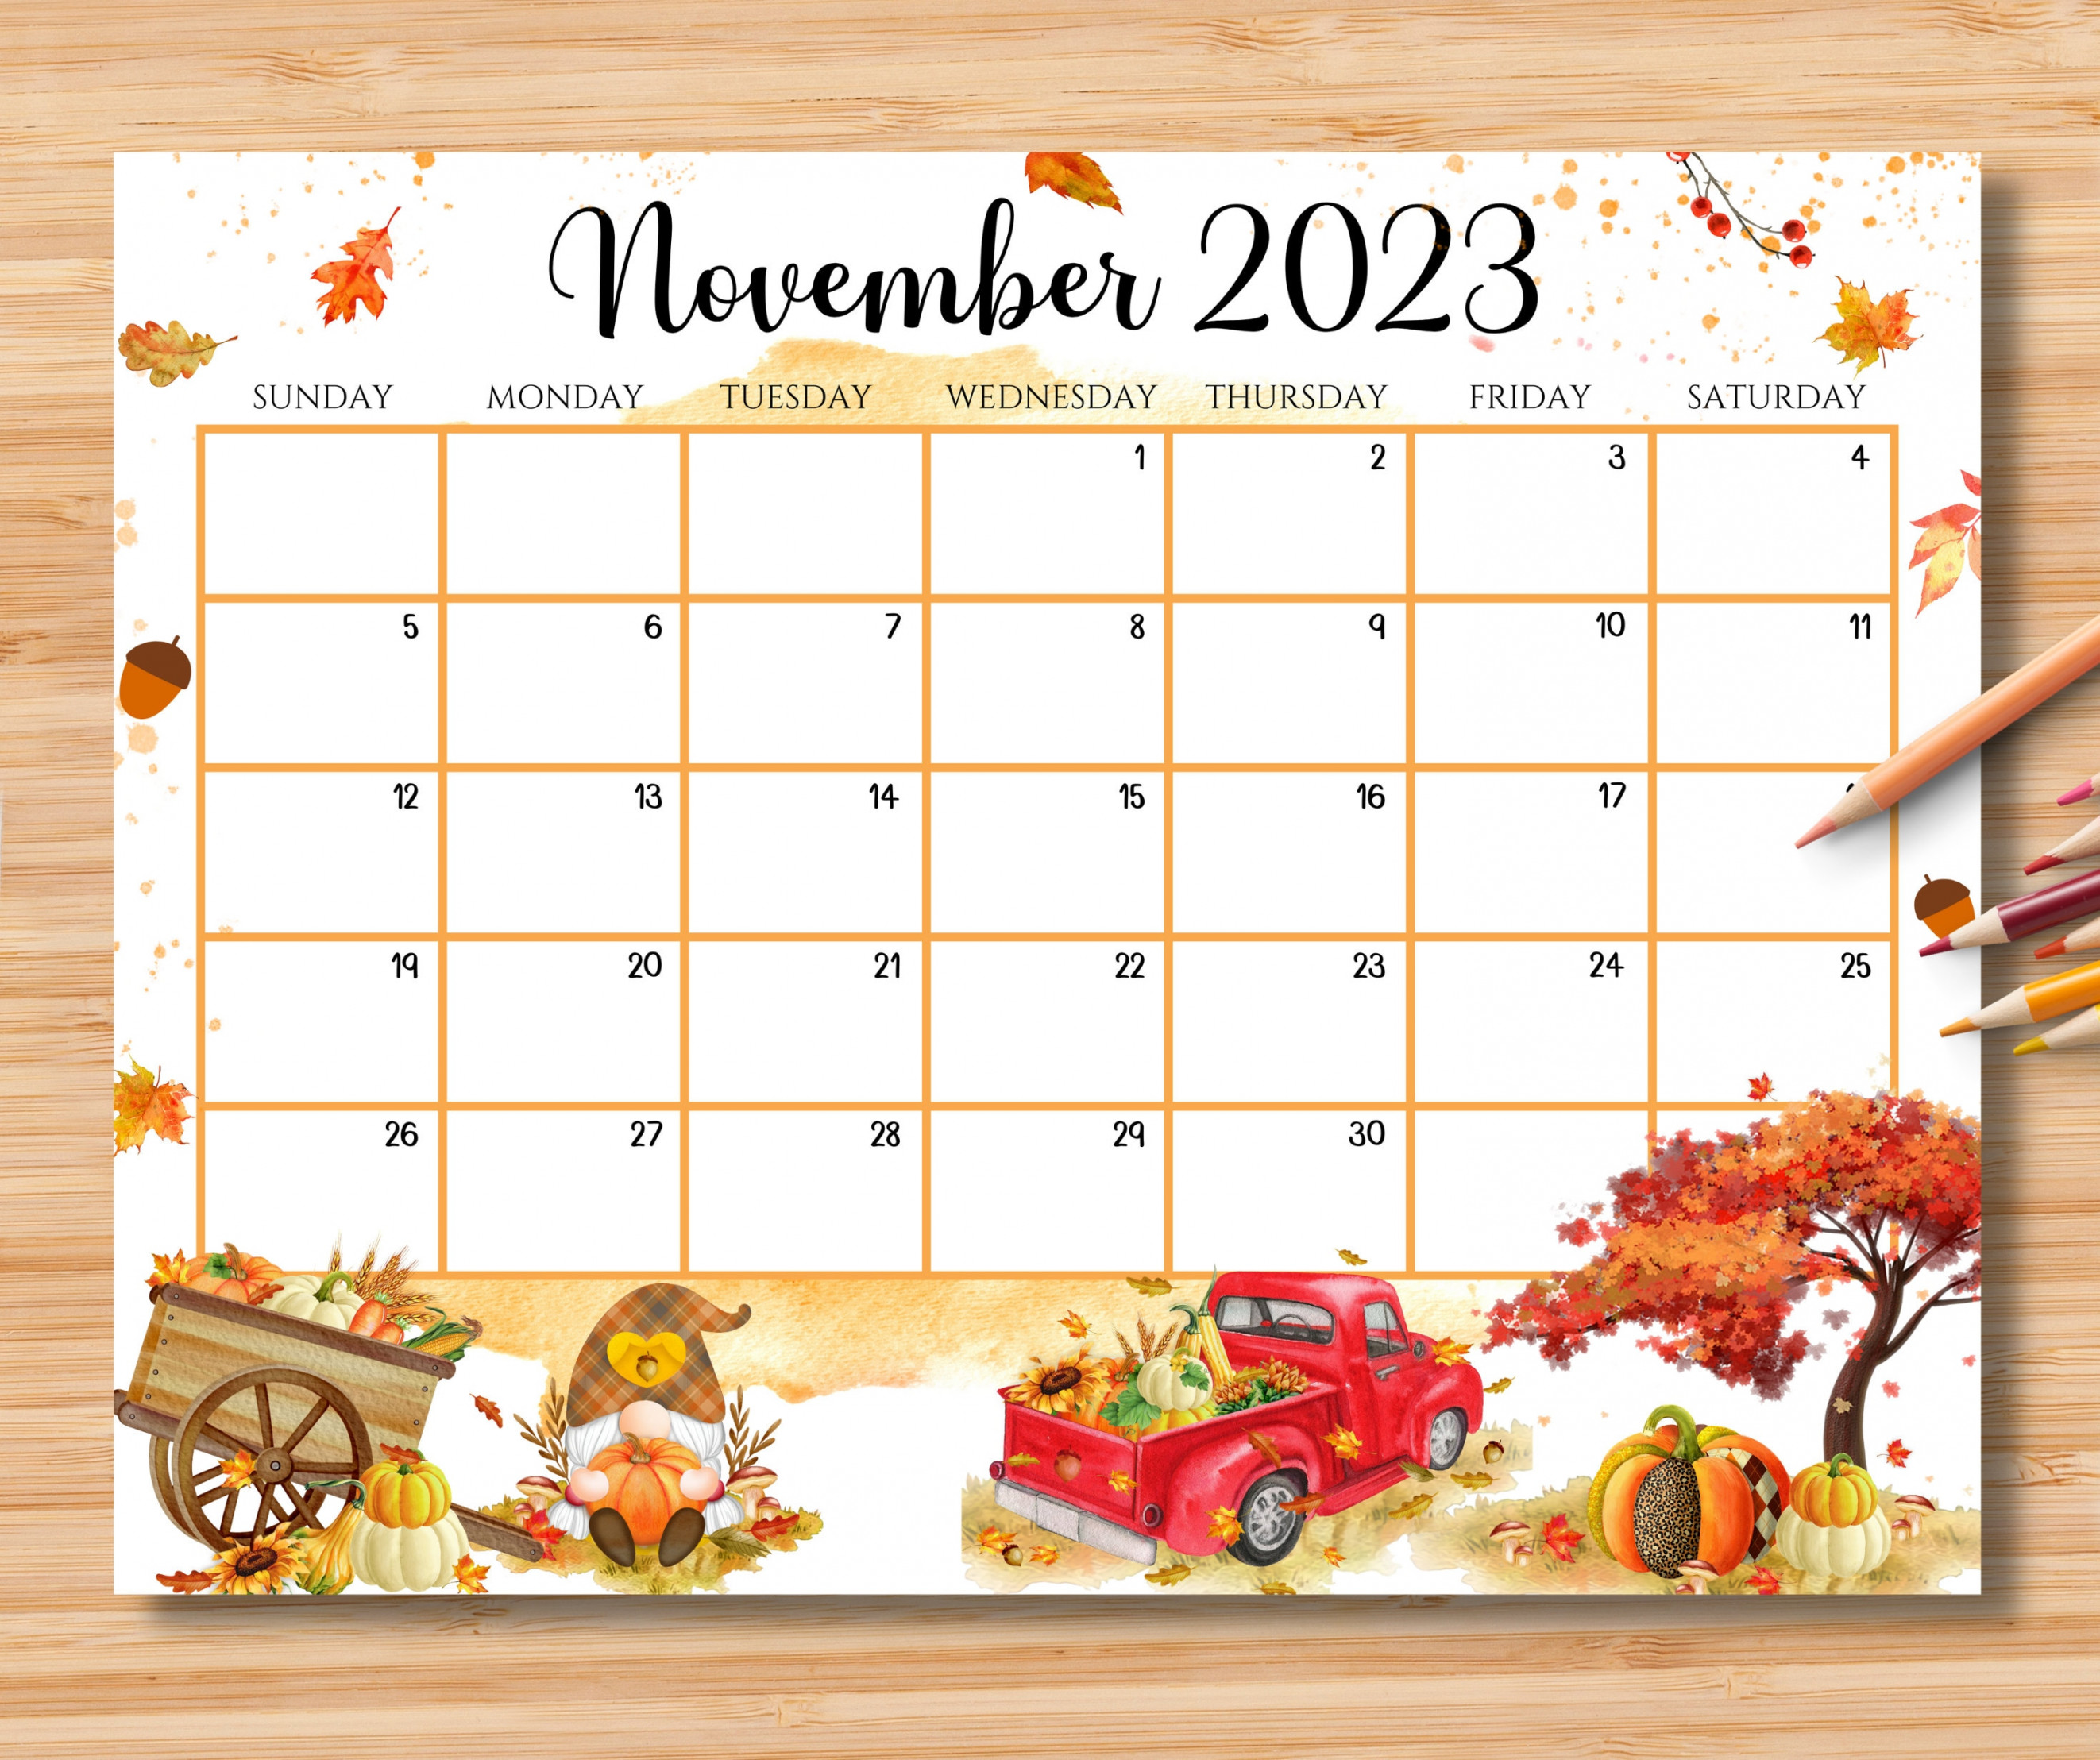 November Schedule - Etsy Ireland